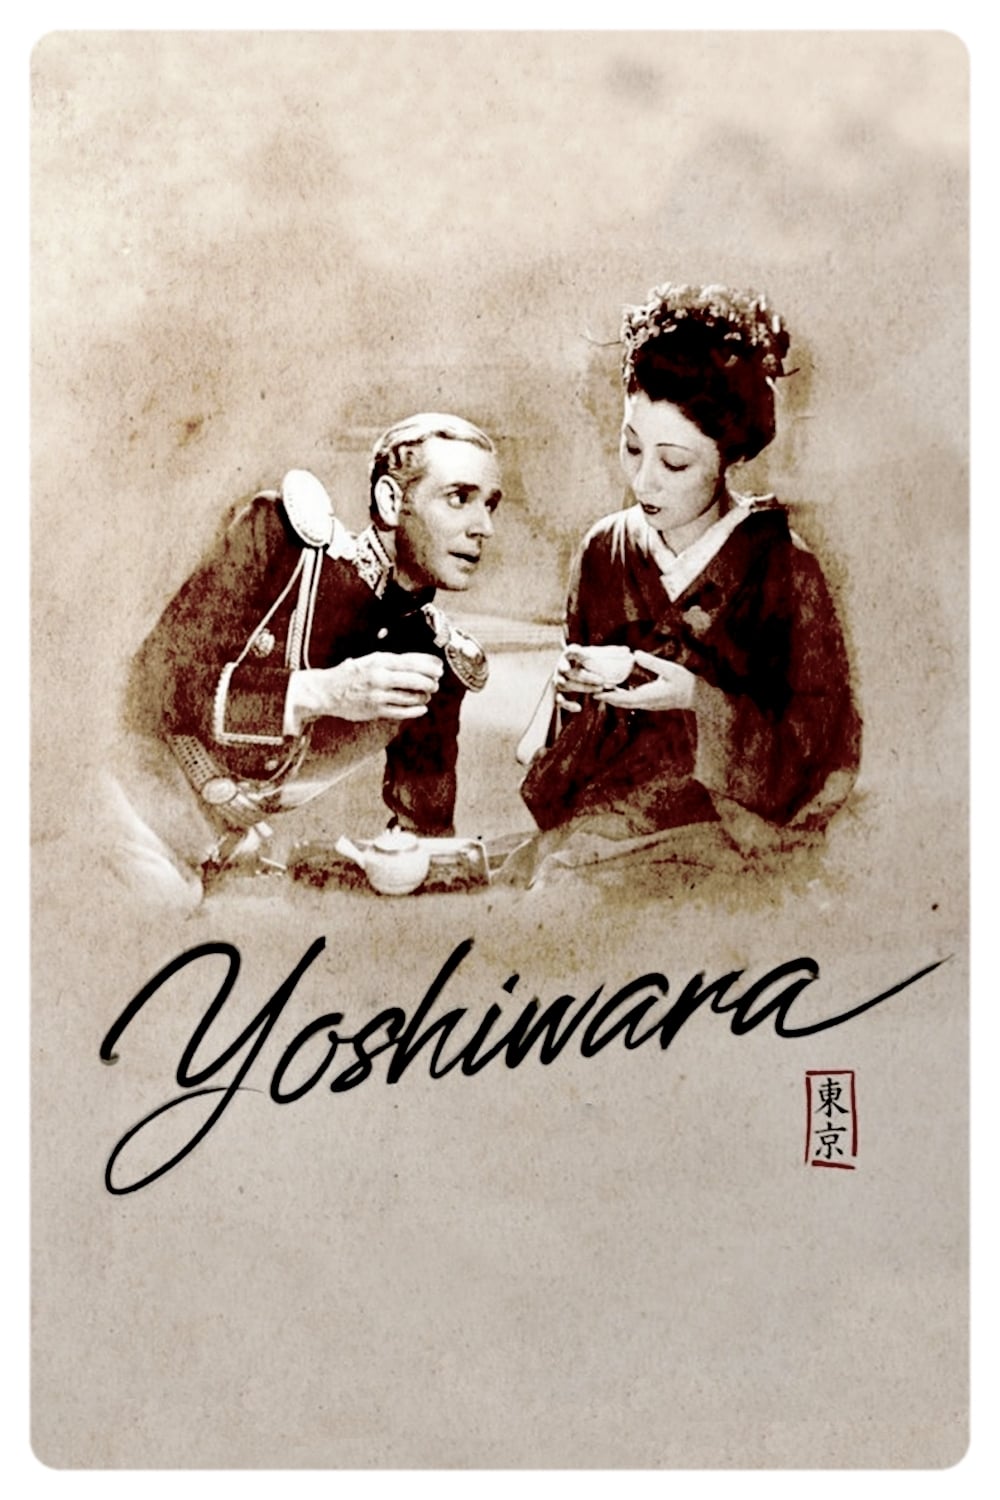 Yoshiwara (1937)